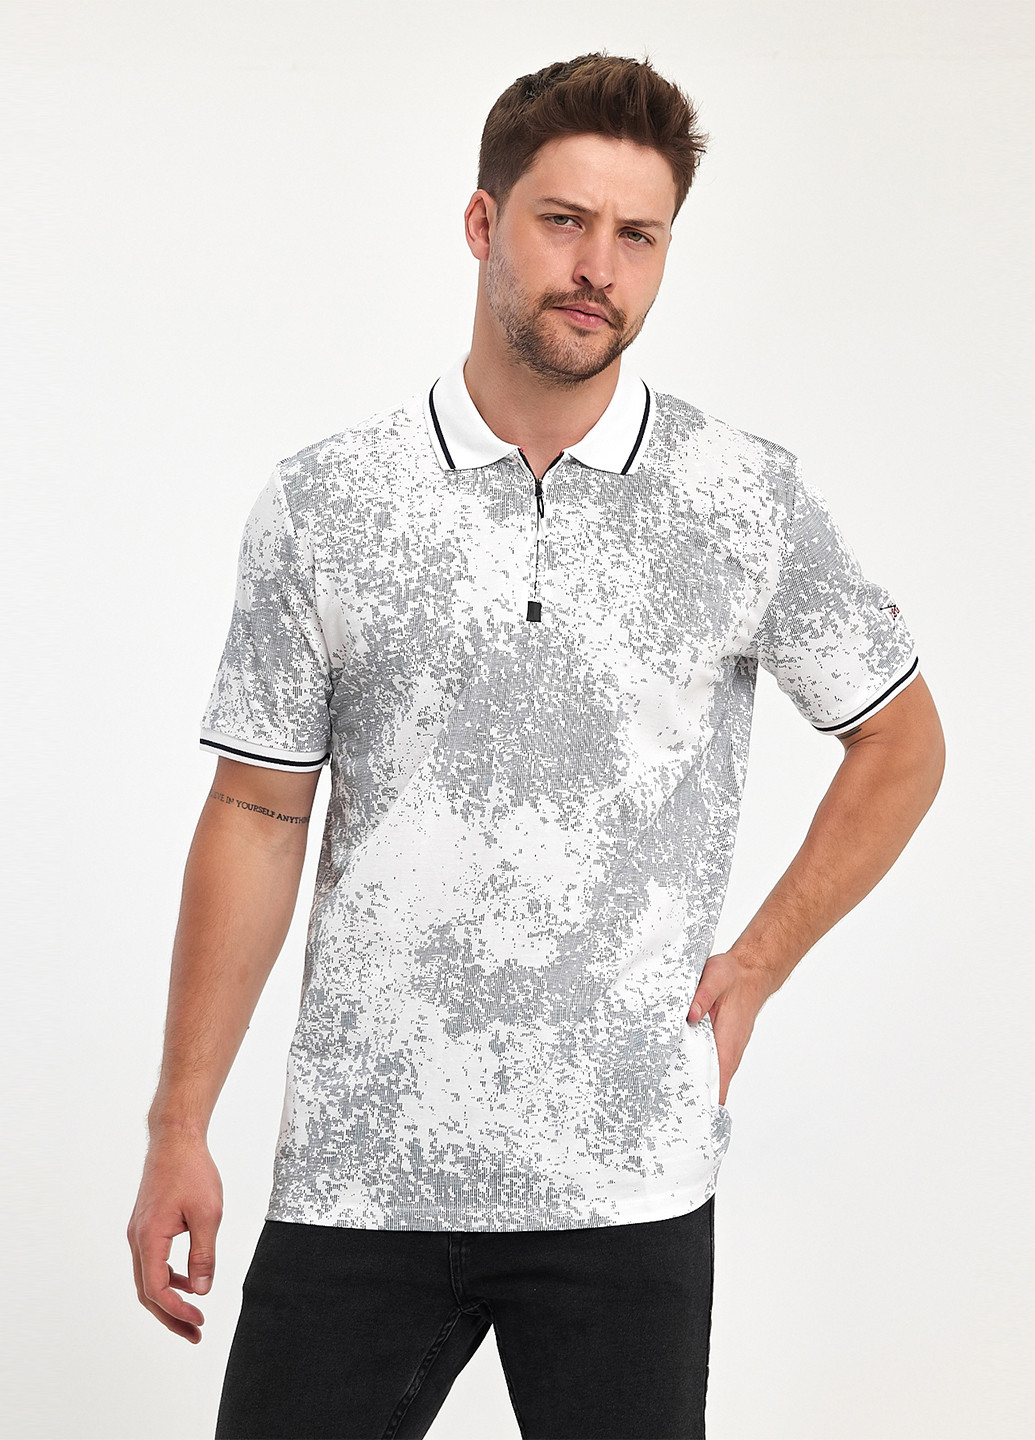 Белая футболка-поло для мужчин Trend Collection с абстрактным узором